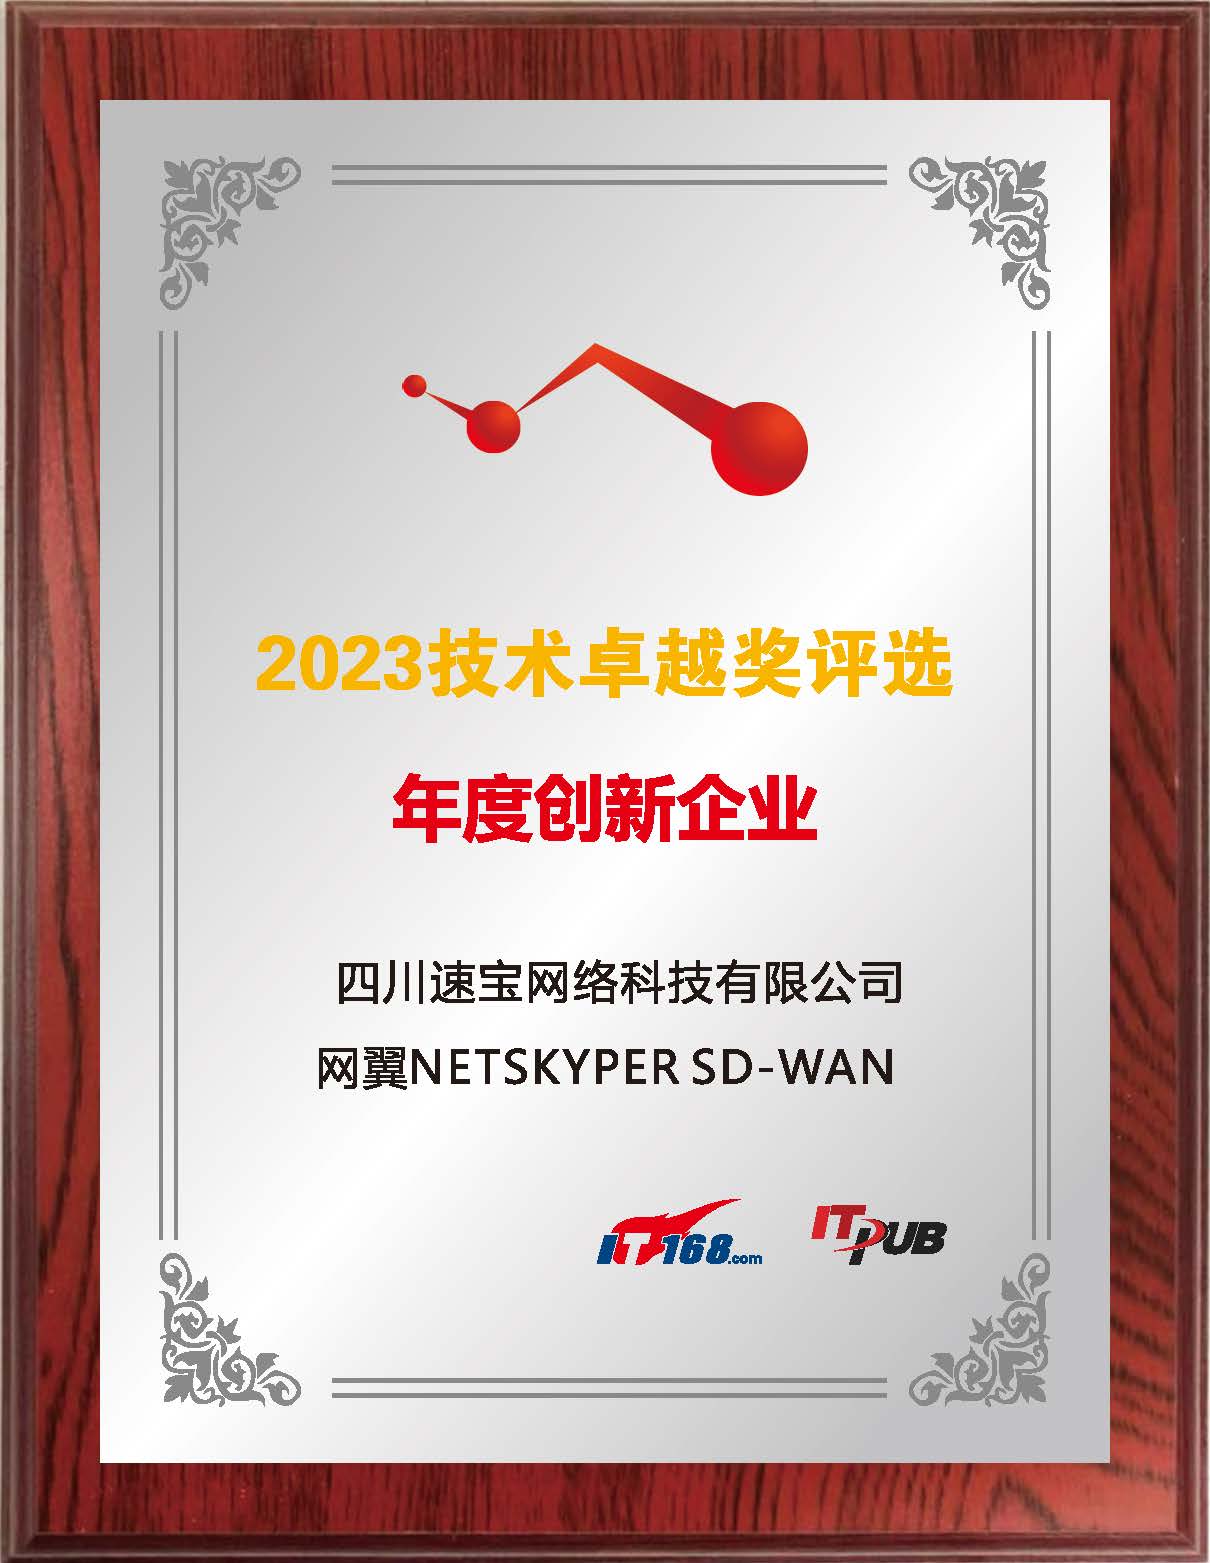 科技新动力丨速宝科技“网翼NETSKYPER”荣获IT168年度创新企业奖